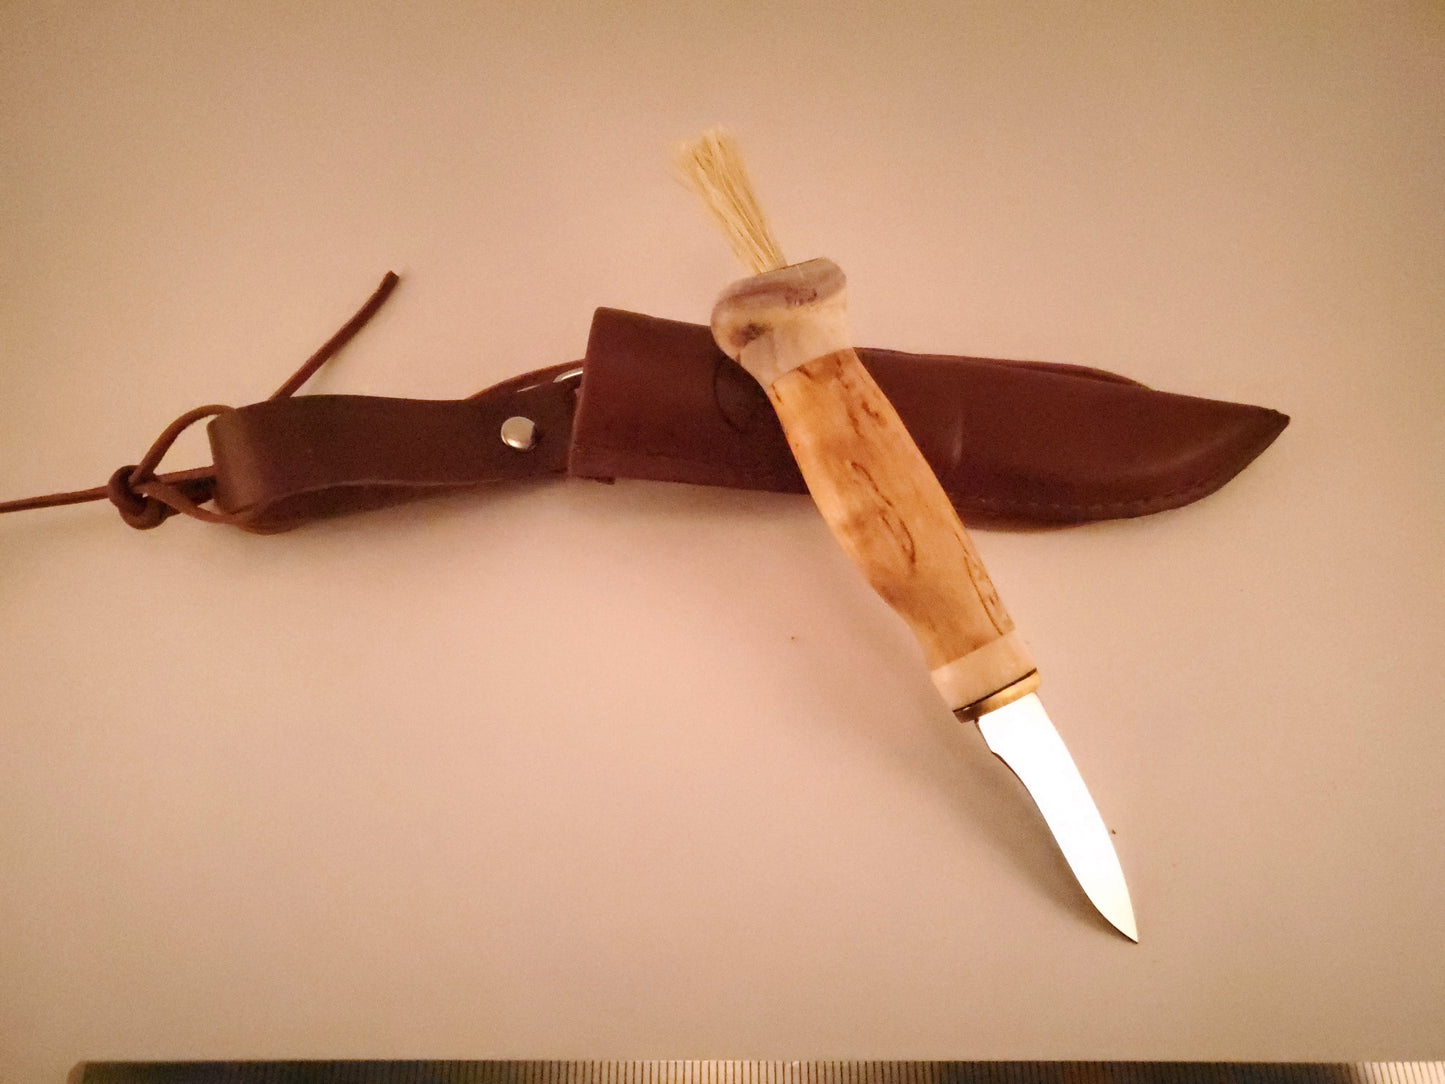 Wood Jewel Mushroom Knife Bushcraft Outdoor Puukko Knife